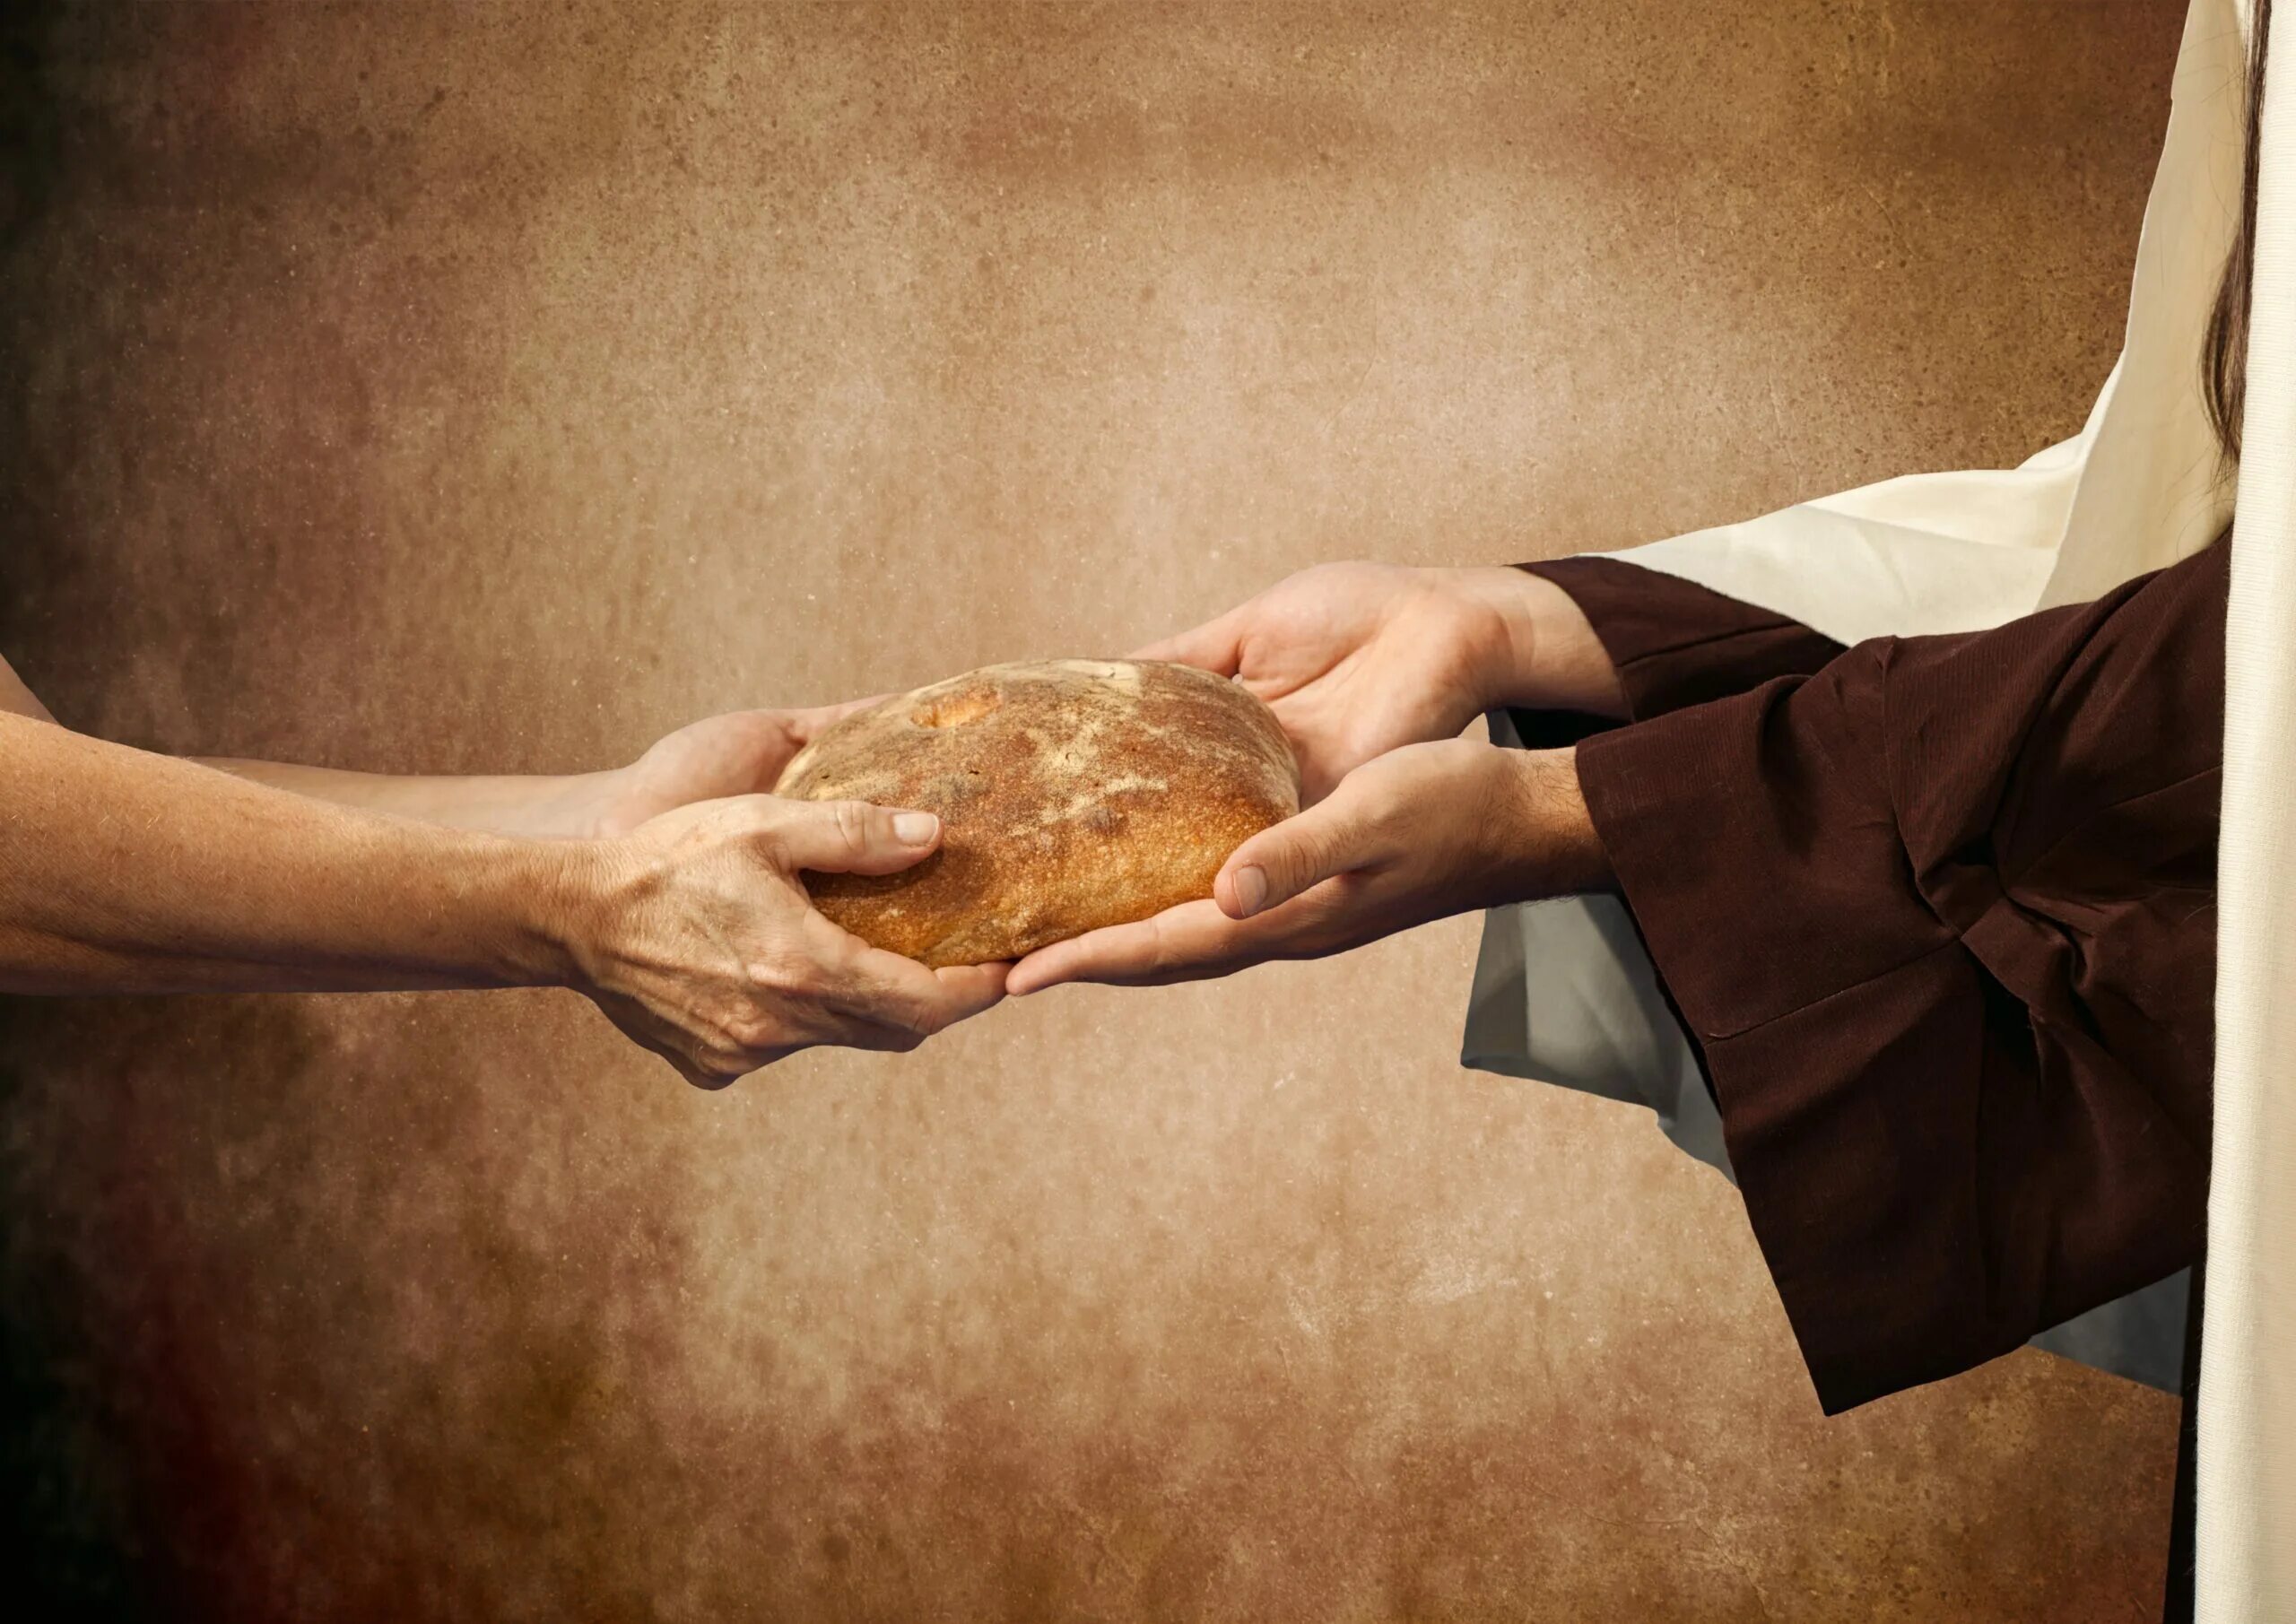 Хлеб в руках. Руки хлебобулочные изделия. Христос и хлеб. Делиться хлебом. Пикник дайте хлеба